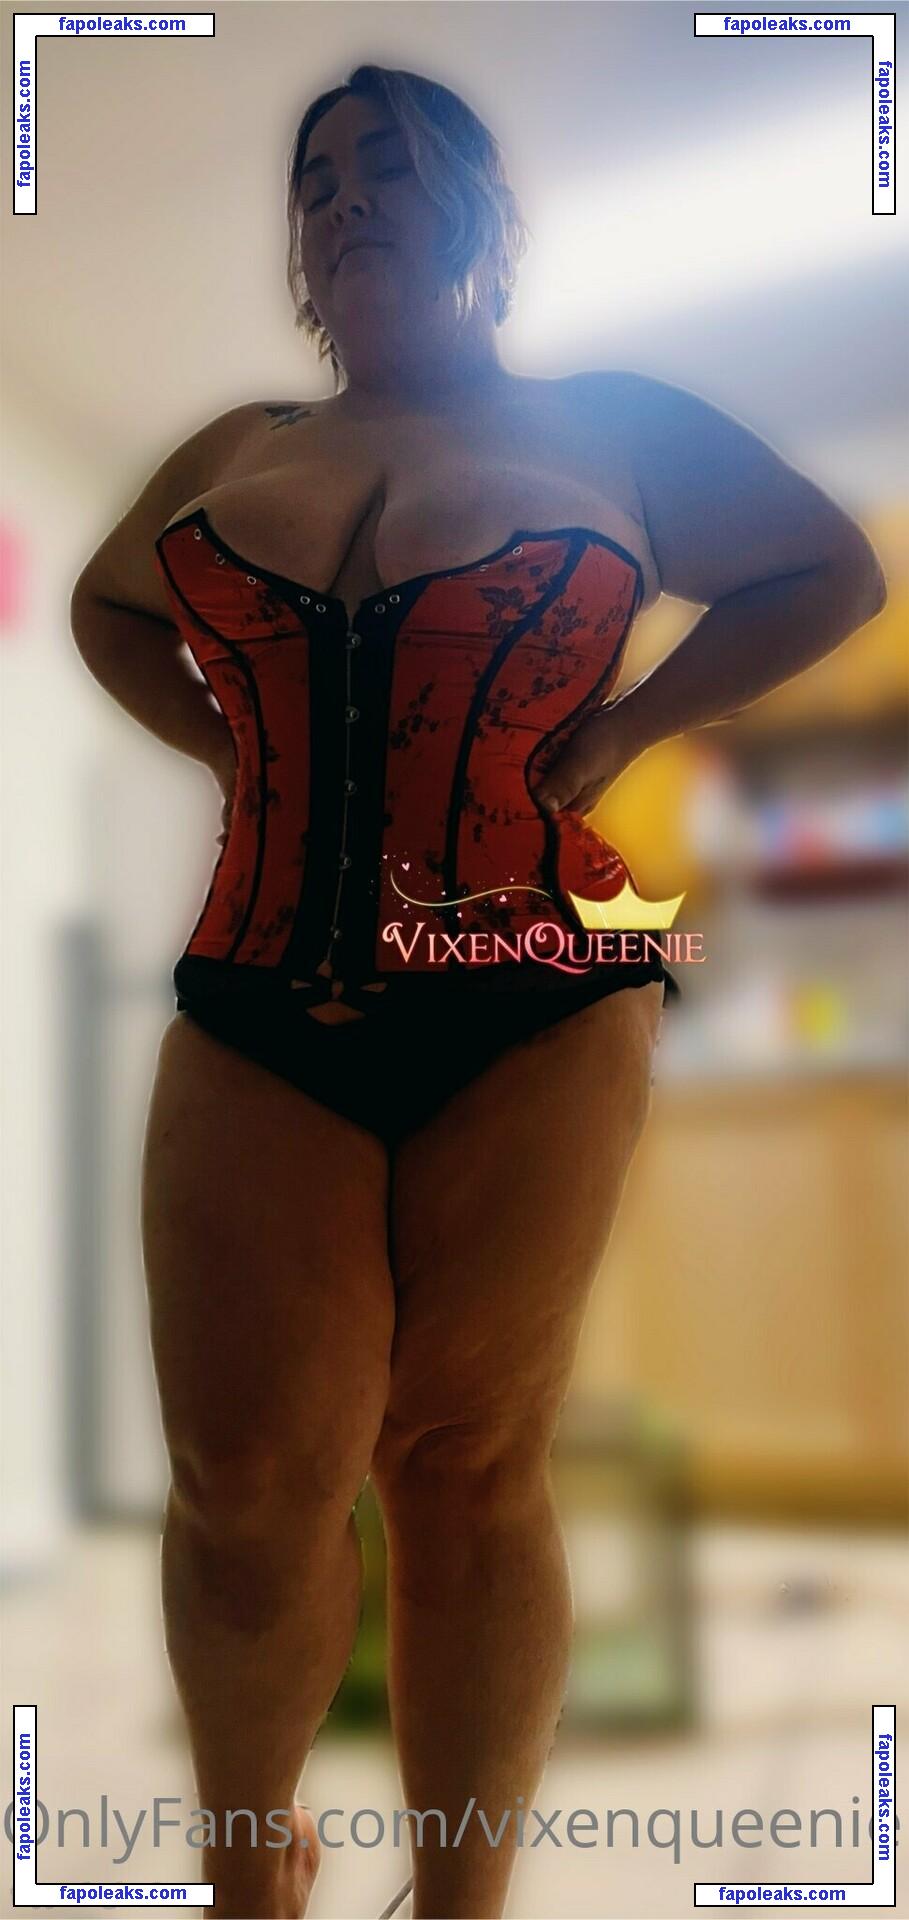 vixenqueenie / your_queenie nude photo #0075 from OnlyFans